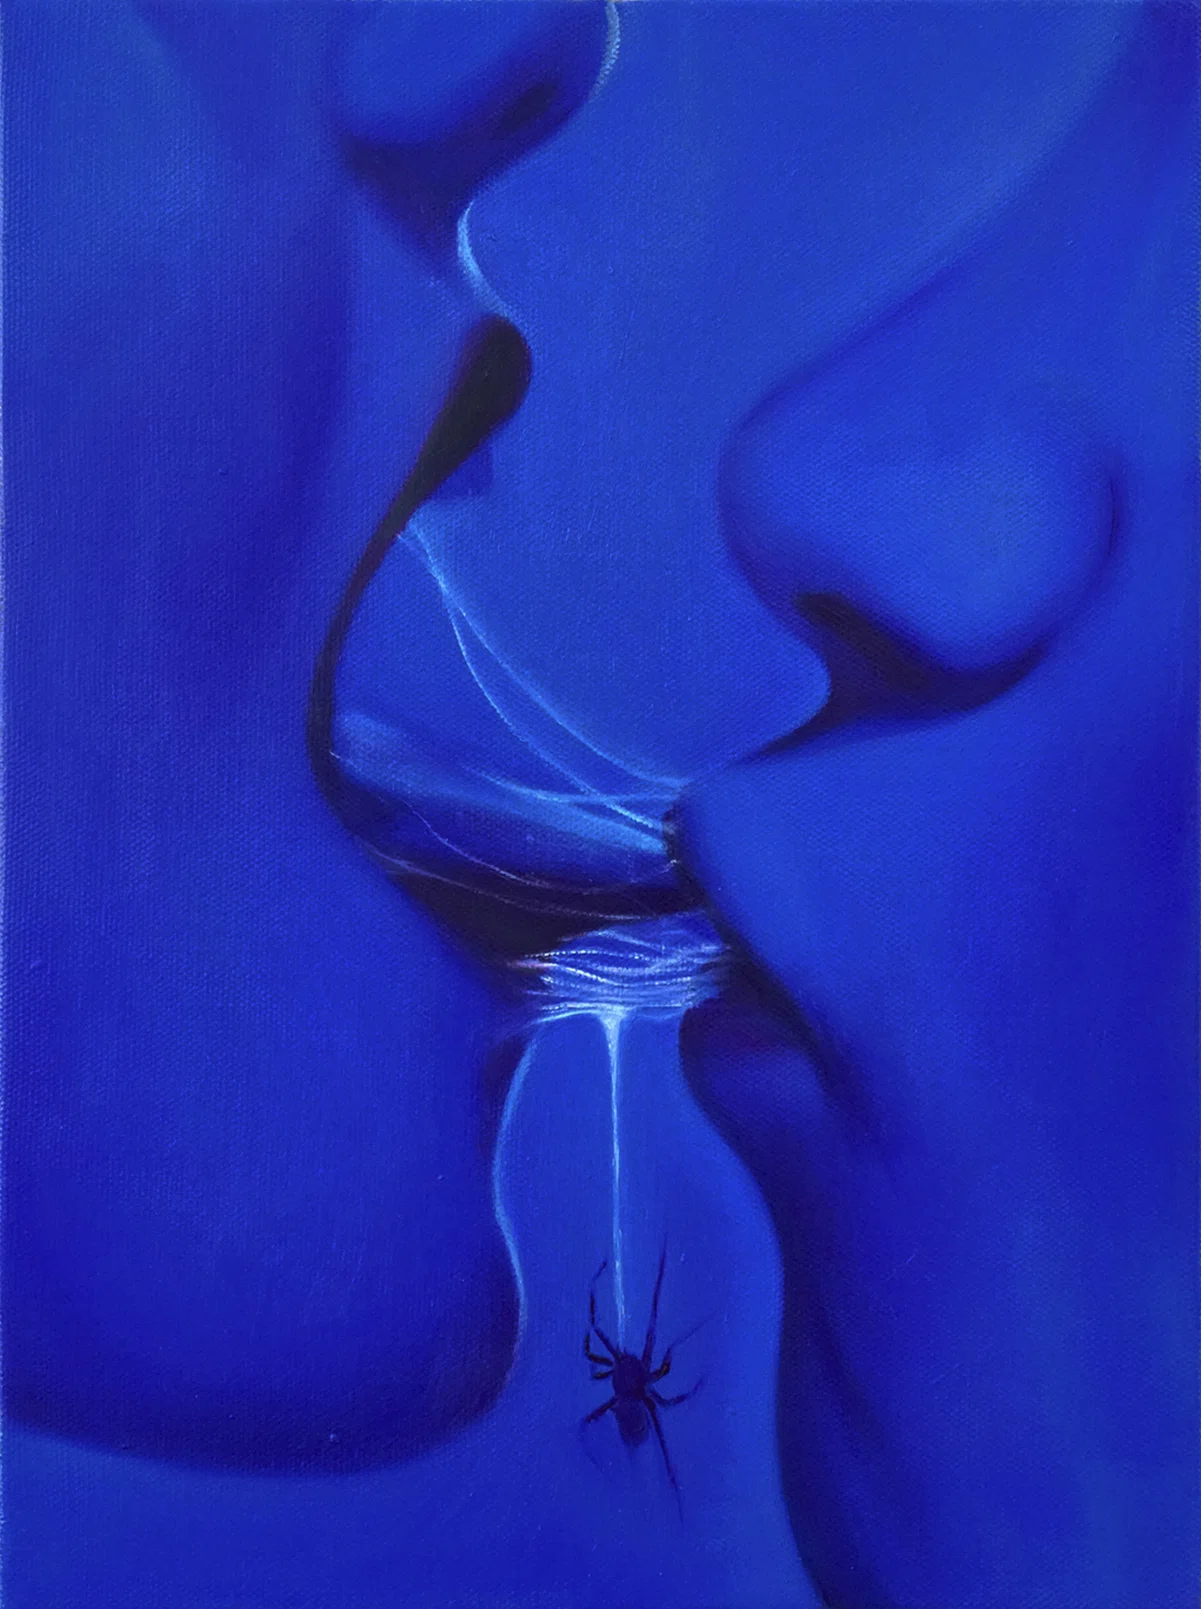 “Intenso, ambivalente e inquieto”: Tao Siqi explora a complexidade do desejo em suas pinturas sensuais